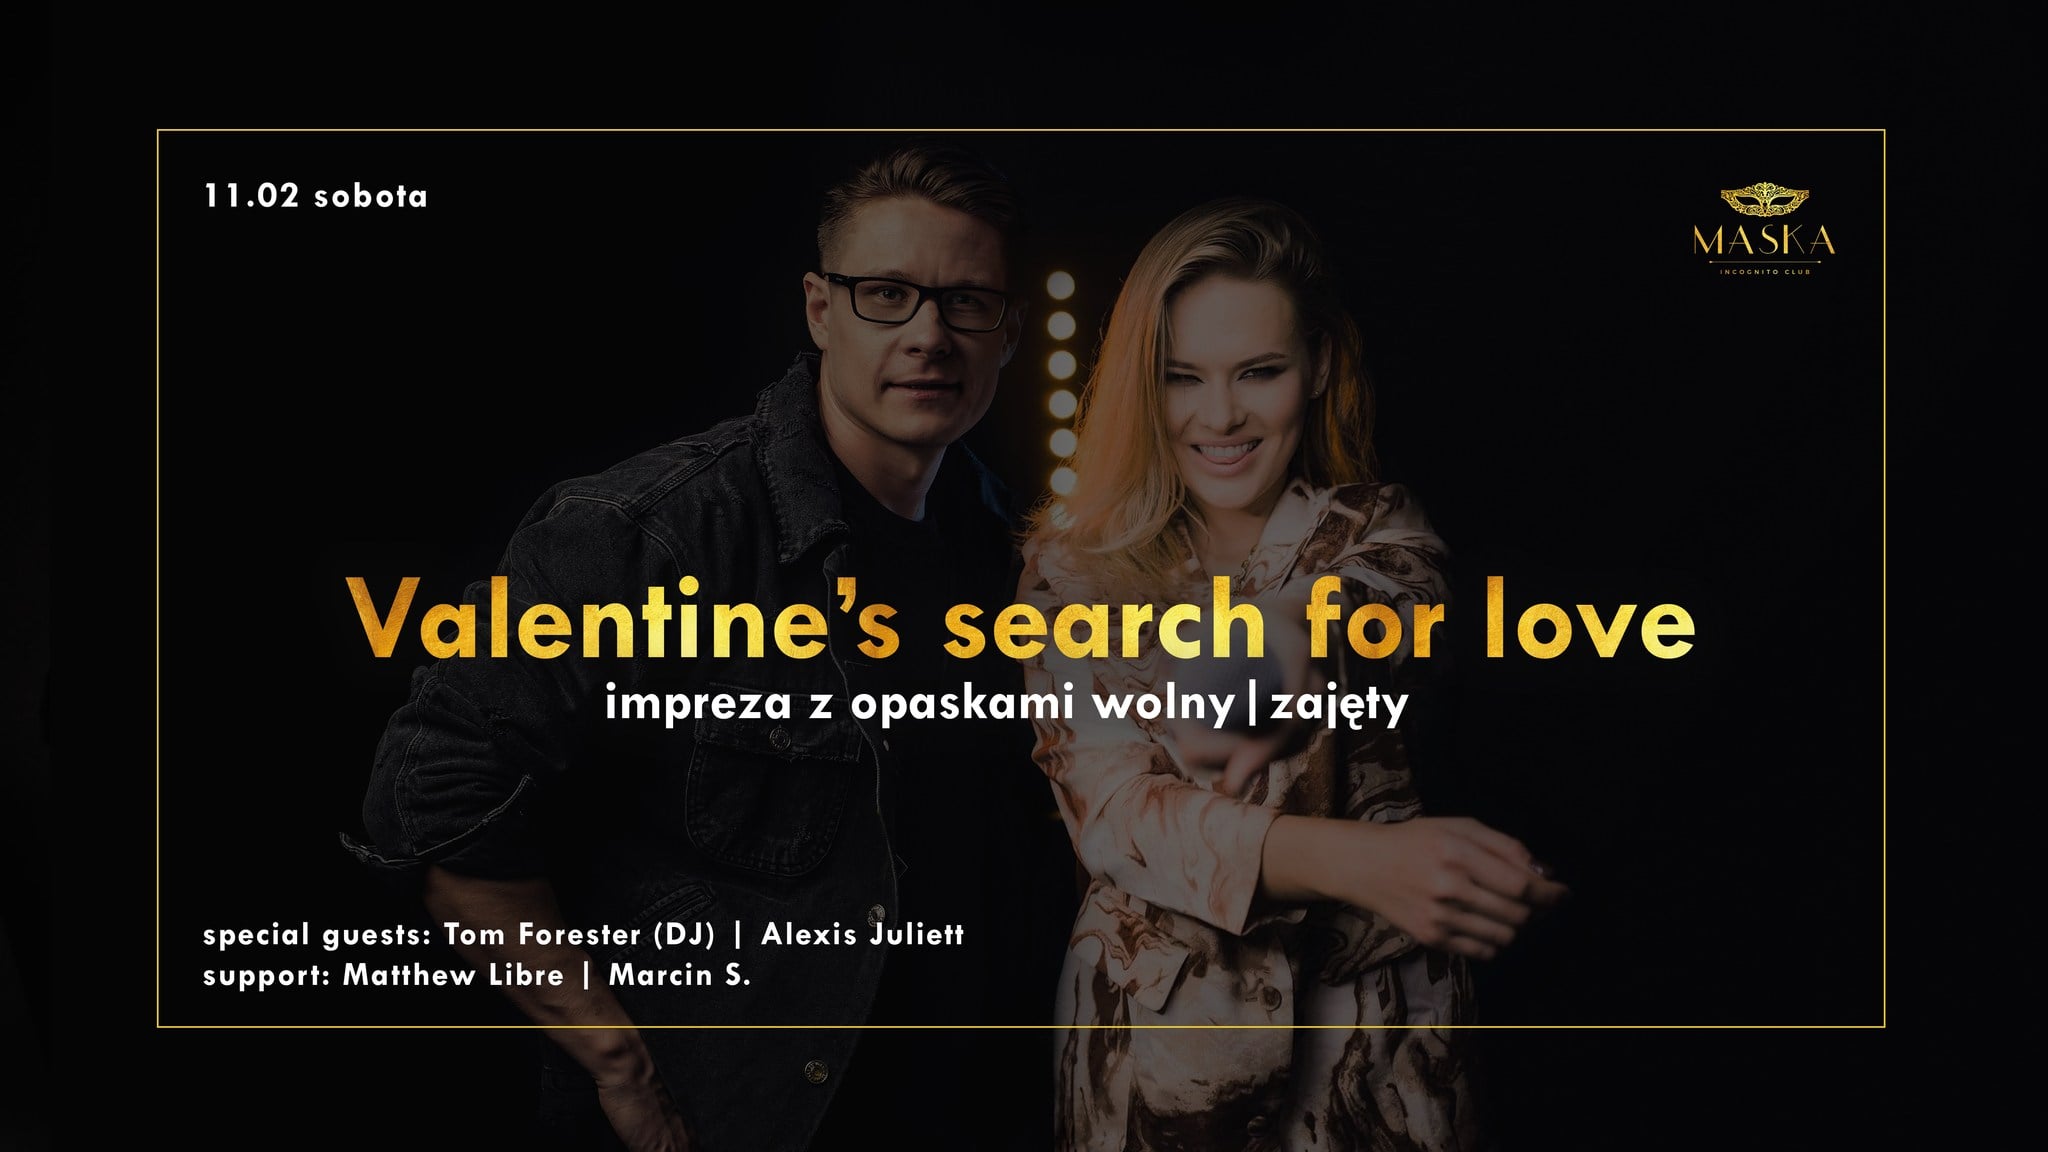 Valentine’s search for love | Impreza z opaskami wolny/zajęty.